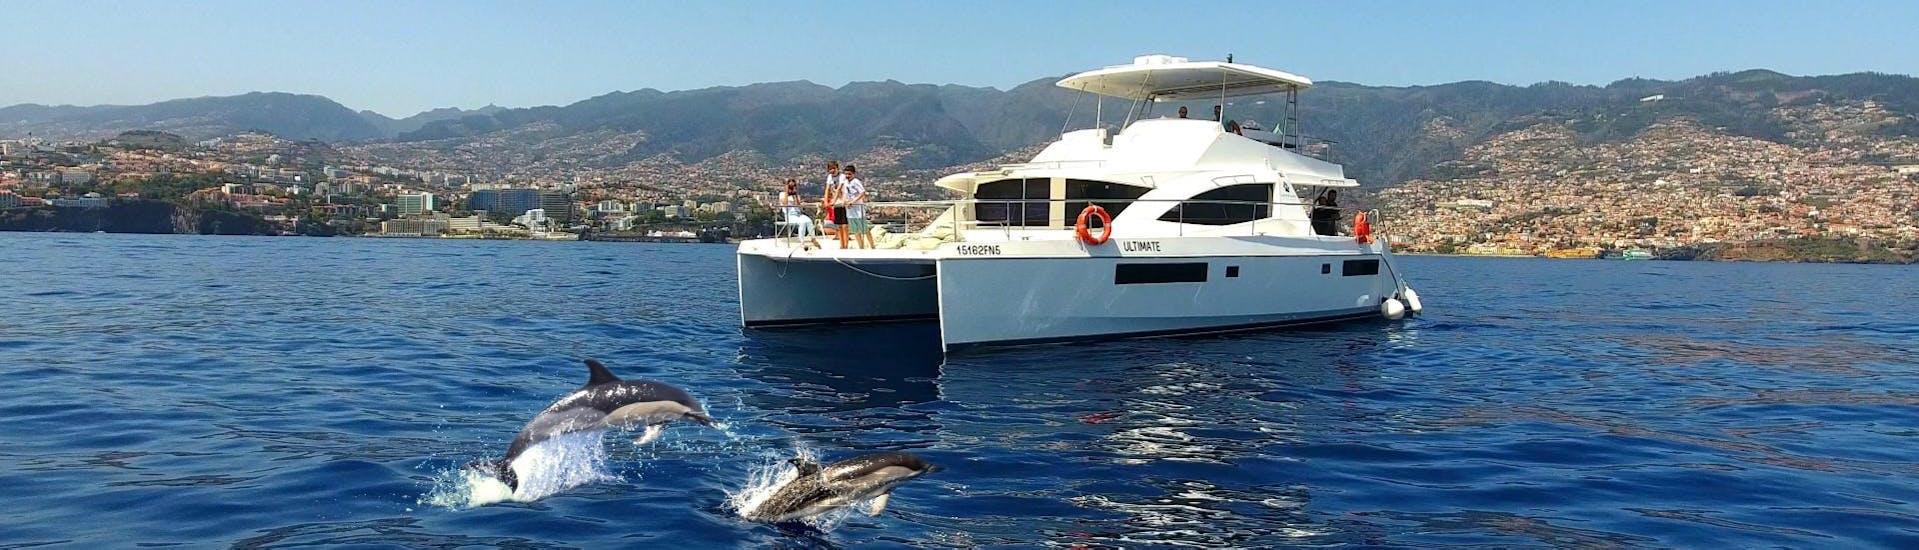 Personnes observant des dauphins depuis le bateau de VIP Dolphins Madeira.